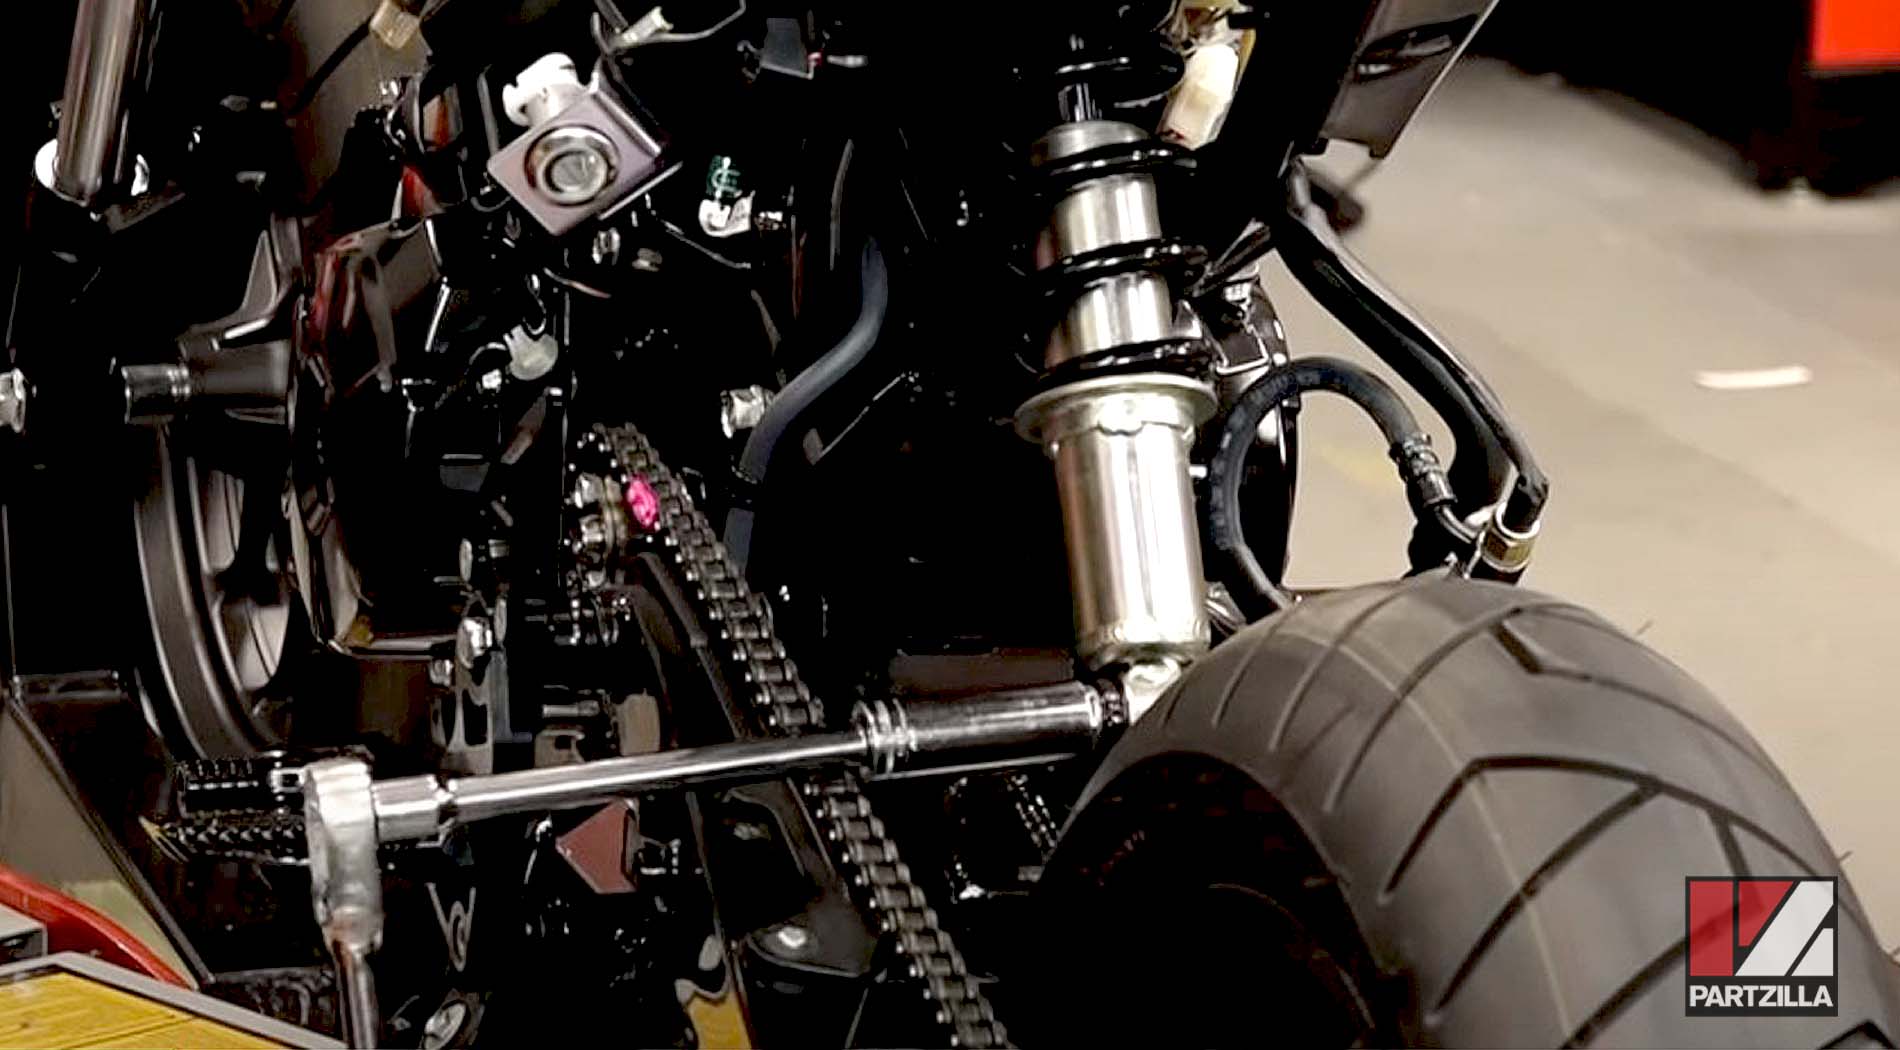 Honda Grom 125 aftermarket suspension upgrades shock absorber removal